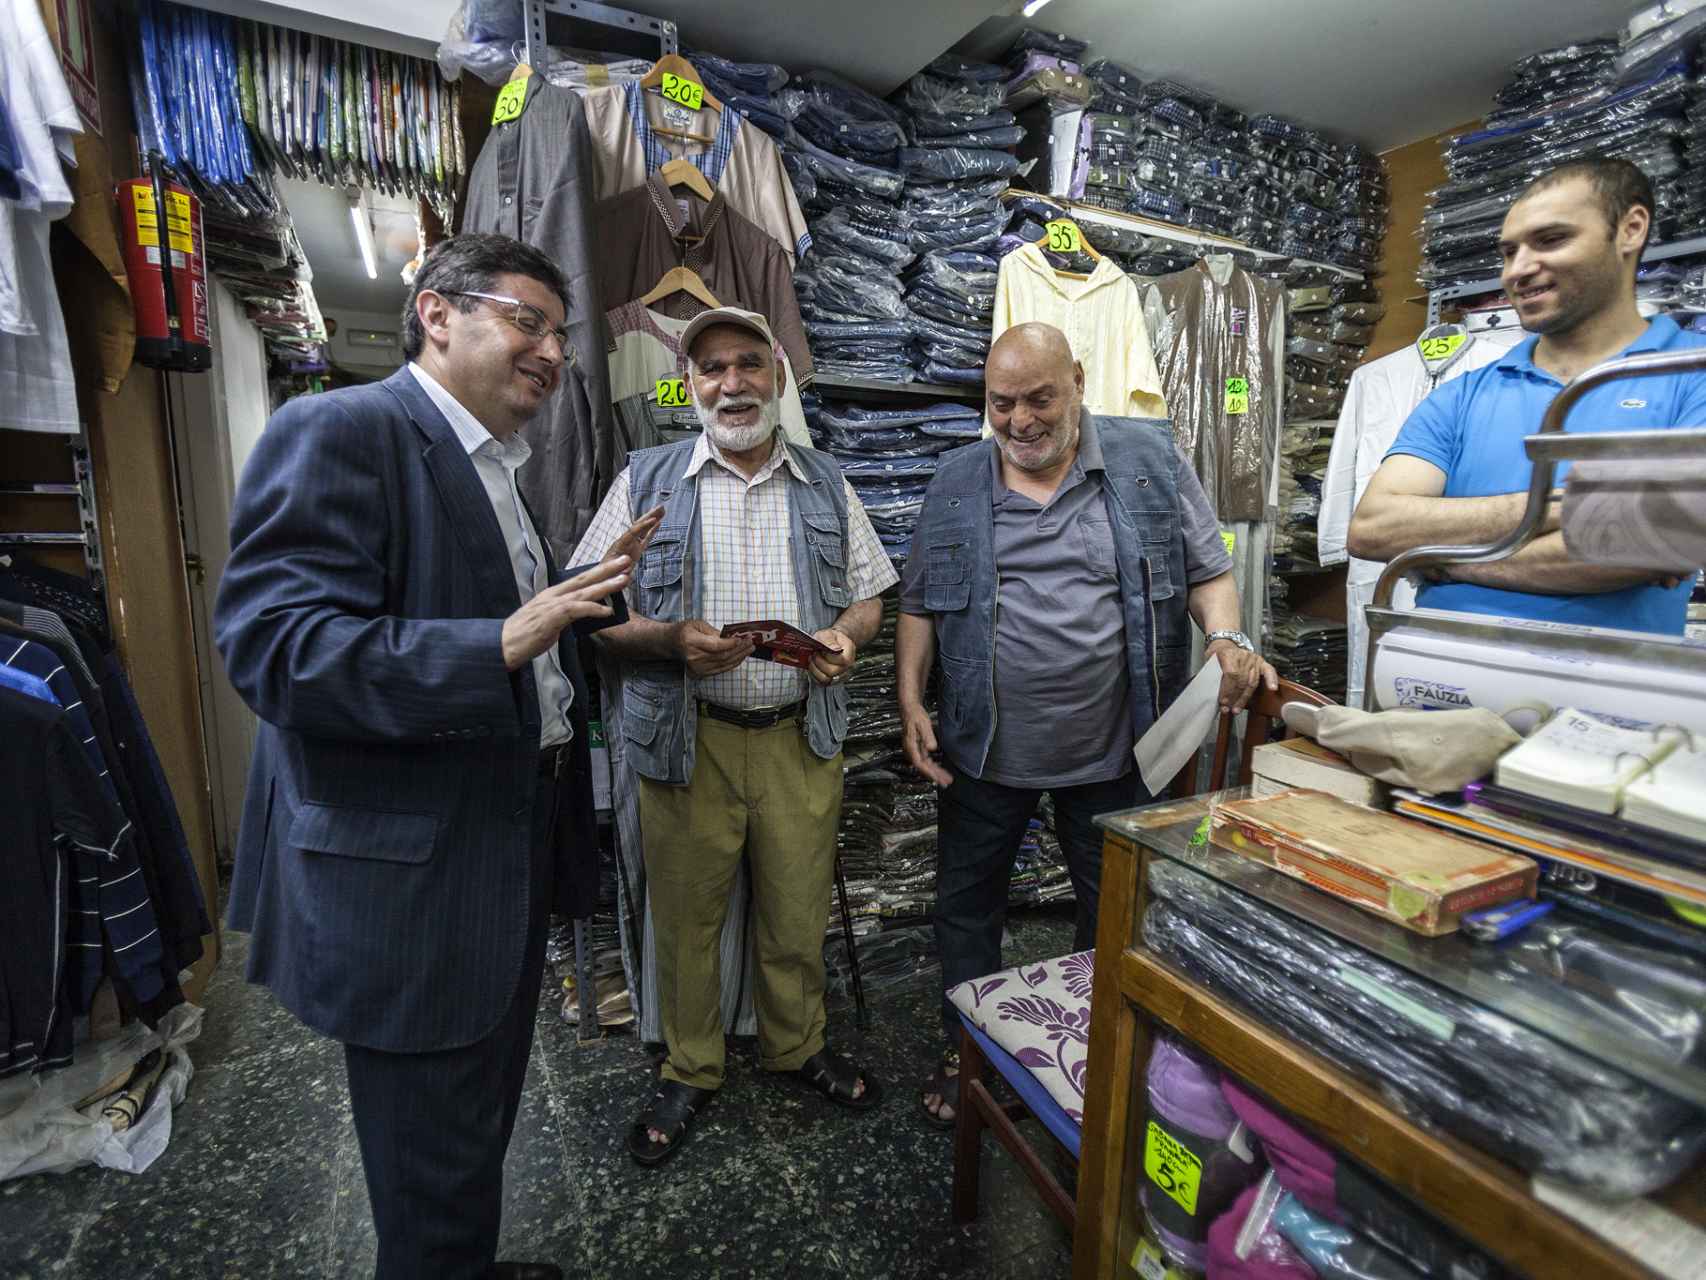 El número seis del PSC al Congreso conversando con otros musulmanes en una tienda de ropa.